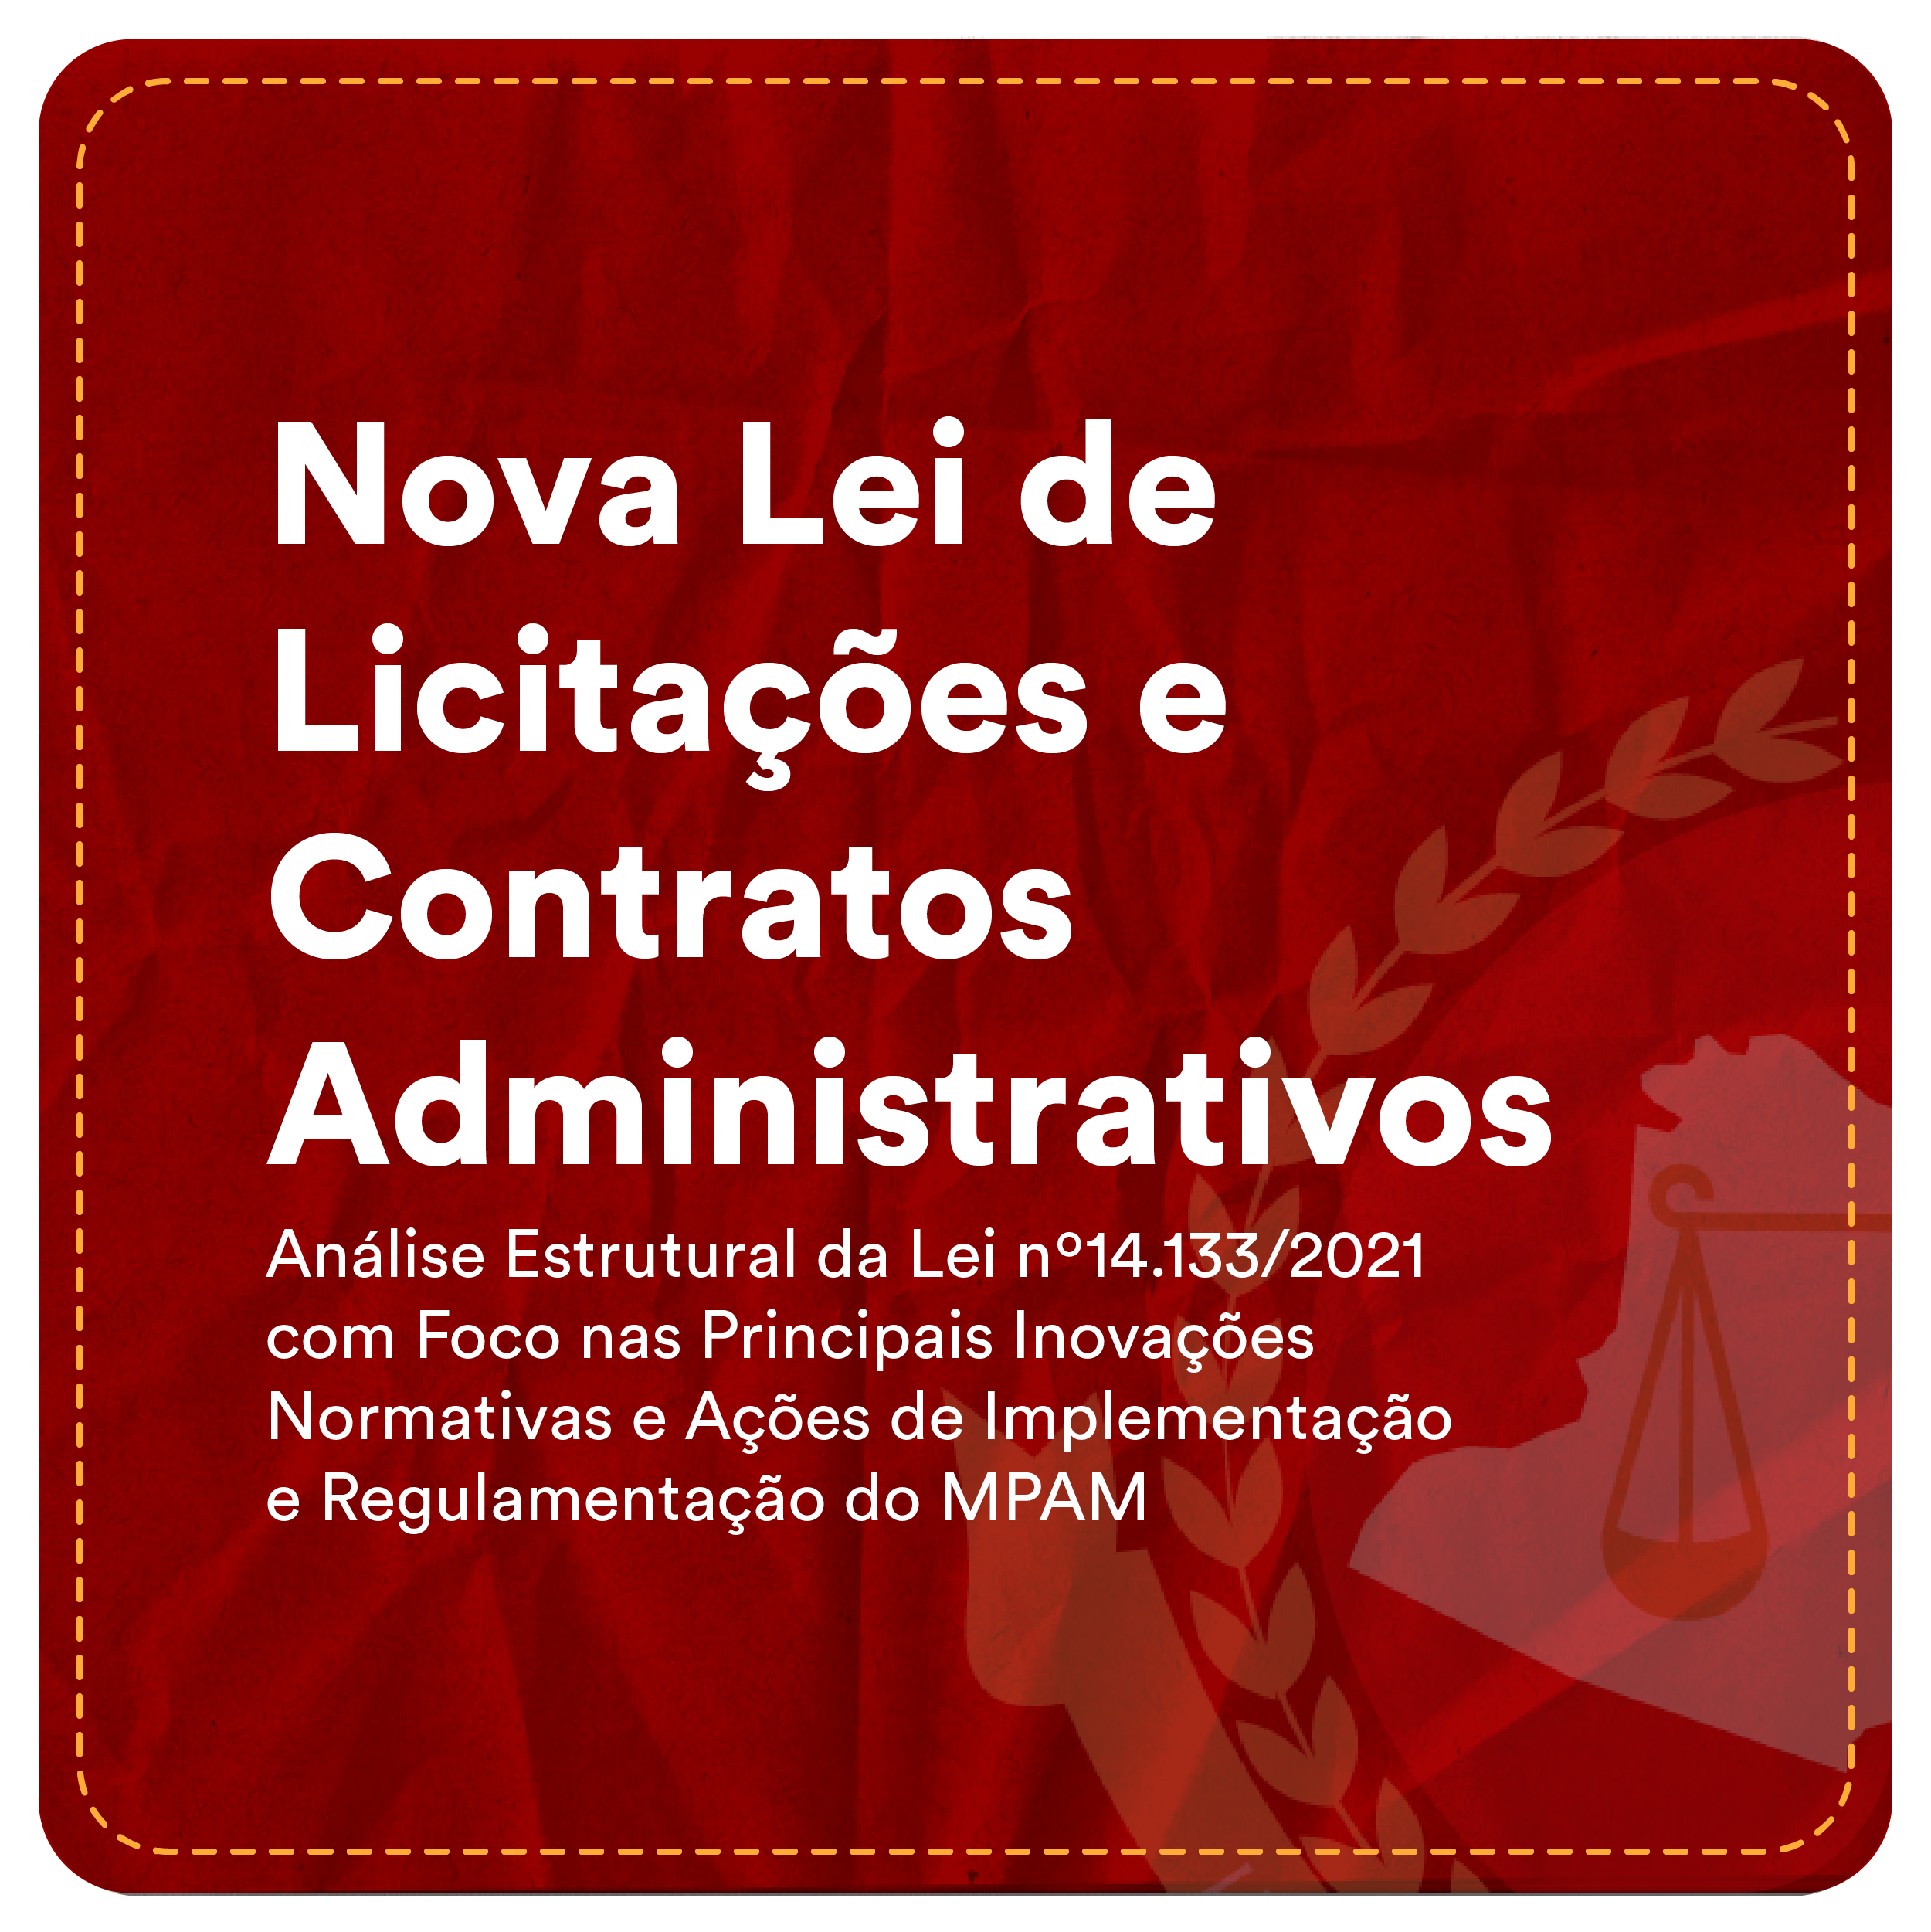 Nova Lei de Licitações e Contratos Administrativos